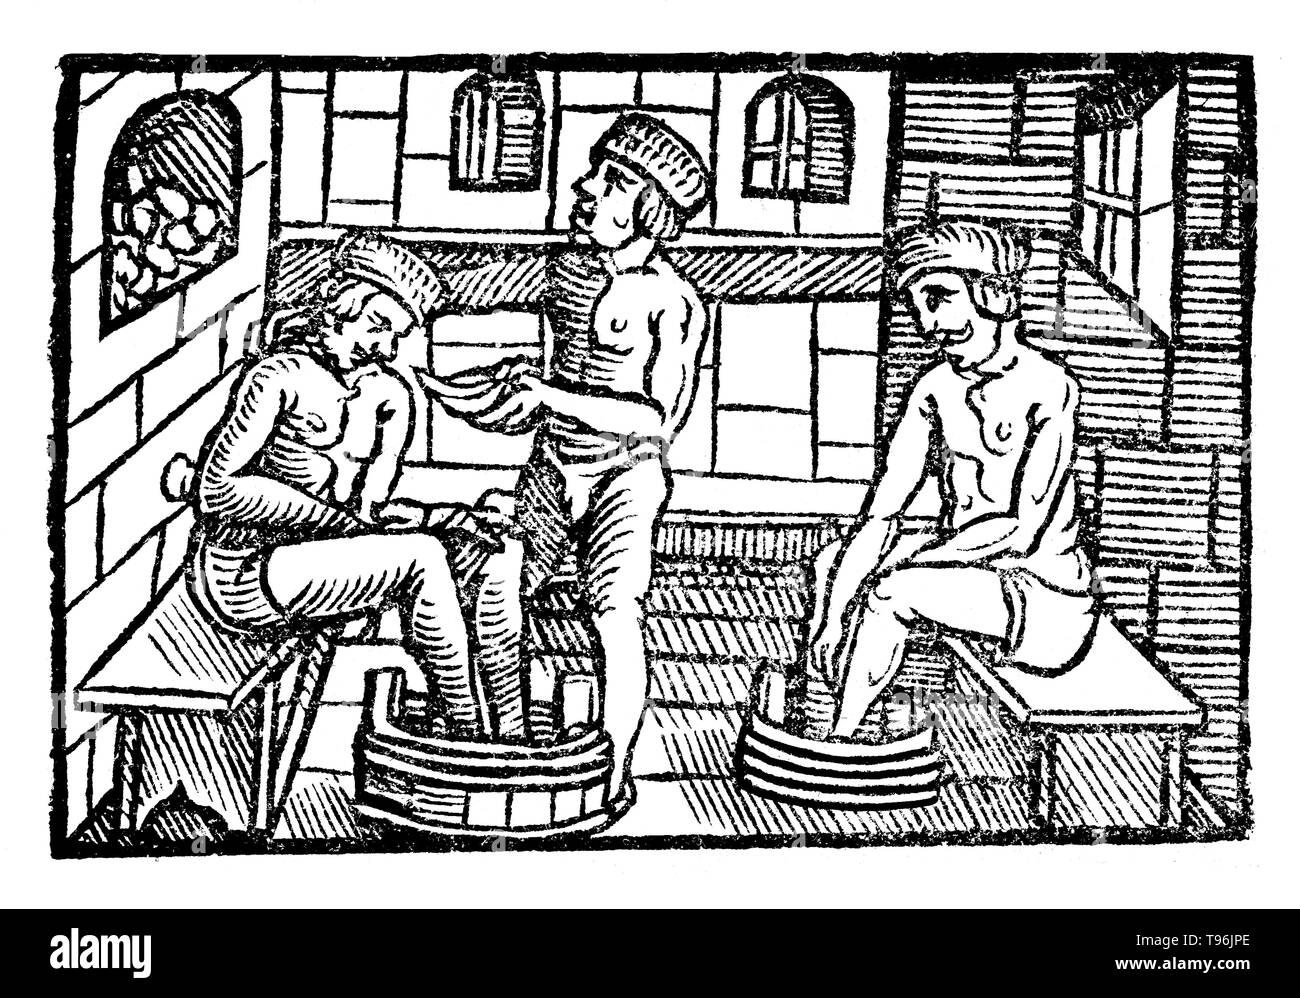 Xilografia illustrazione da Der gantzen Artzenei, 1542. Johann Dryander (Eichmann) (27 giugno 1500 - 20 dicembre 1560) era un tedesco anatomista, astronomo e medico. Nel 1535 fu nominato professore di medicina presso l'Università di Marburg. Dryander è stato uno dei primi autori di libri di testo per illustrare con xilografie e il primo per illustrare una dissezione galenica del cervello umano. Una edizione ampliata di questo inizio di libro, il Anatomiae pars prima, è stato pubblicato nel 1537. Foto Stock